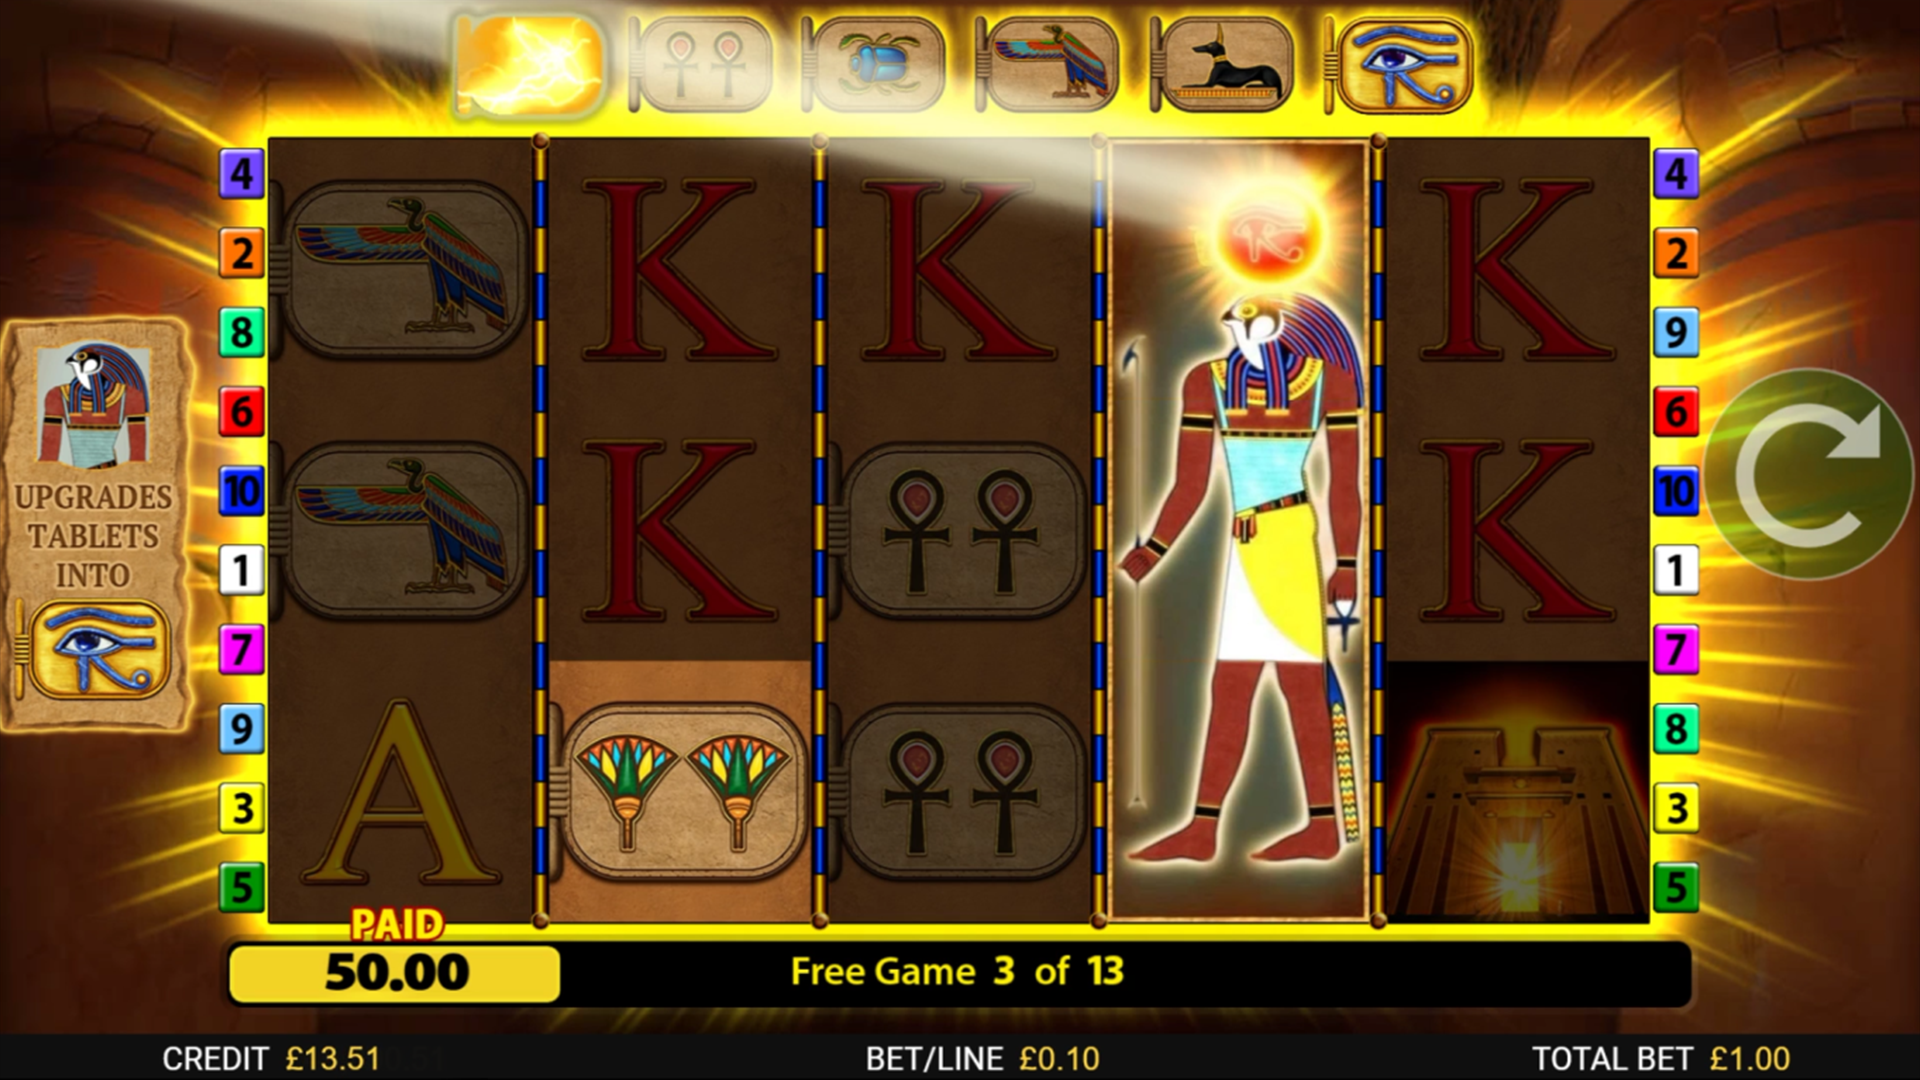 Eye of Horus The Golden Tablet Slot